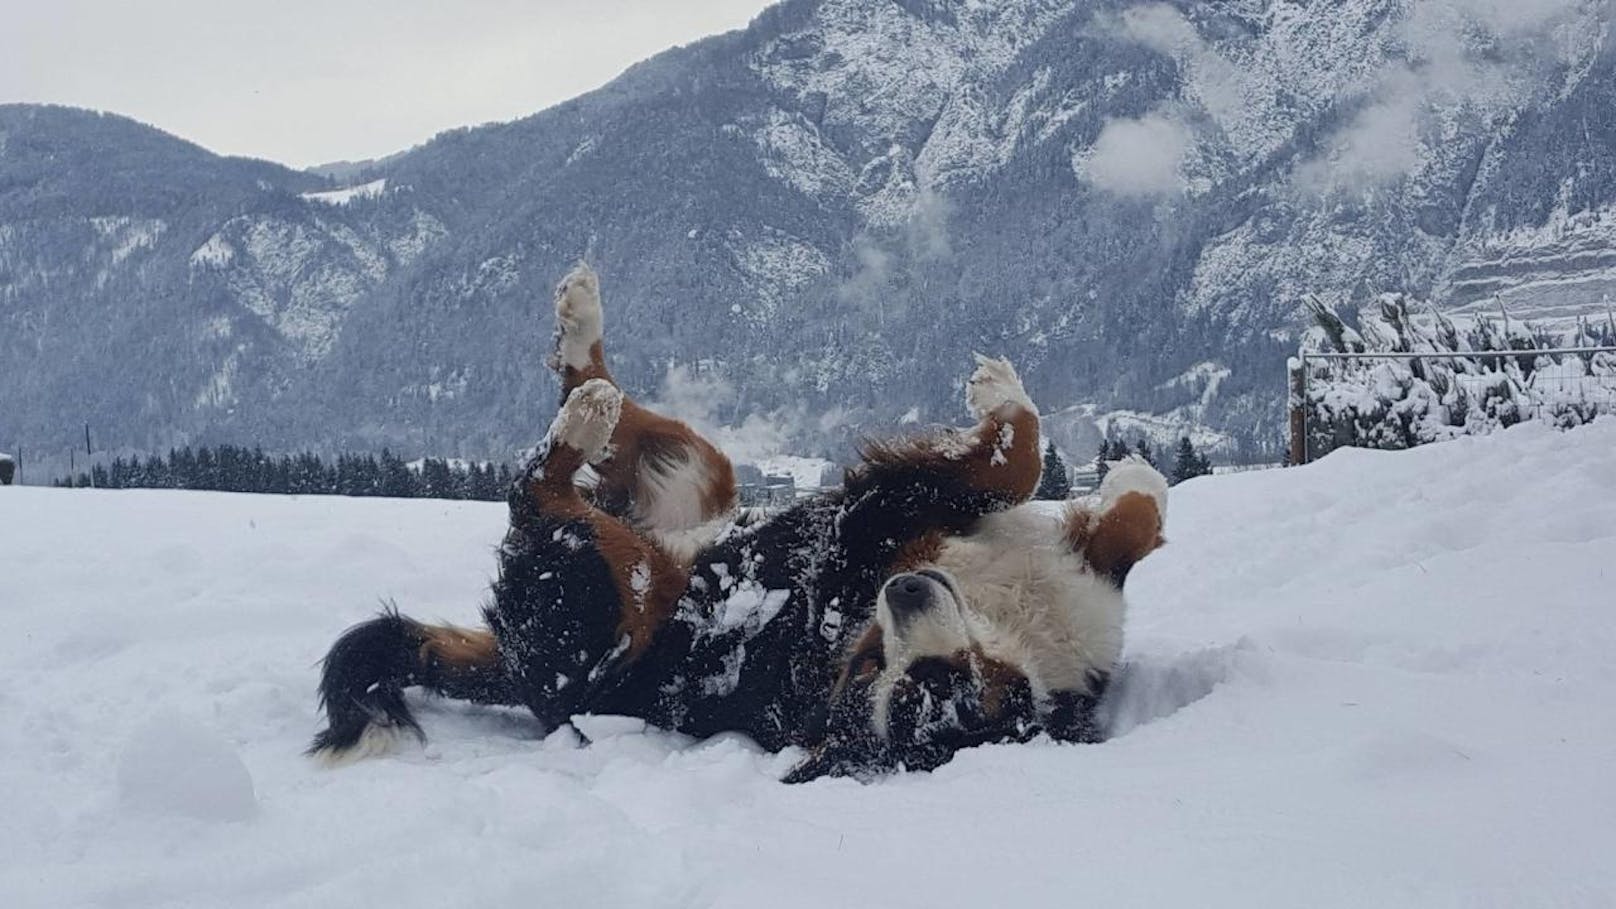 "Auch Hunde haben Spaß im Schnee"